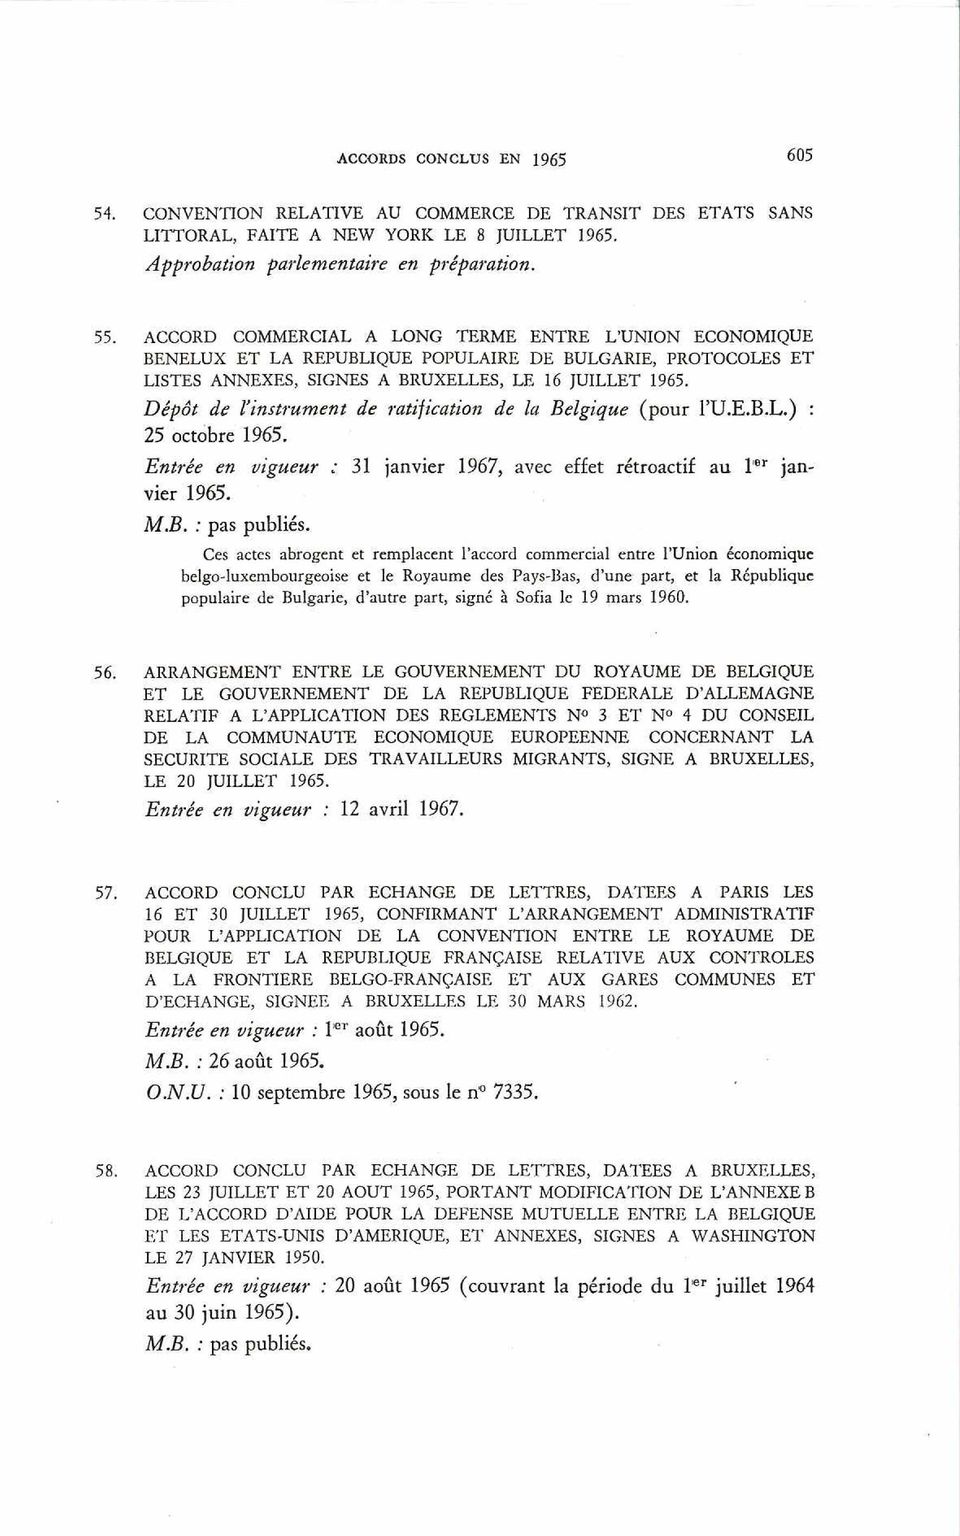 Dépôt de Vinstrument de ratification de la Belgique (pour l U.E.B.L.) : 25 octobre 1965. Entrée en vigueur : 31 janvier 1967, avec effet rétroactif au l 6r janvier 1965. M.B. : pas publiés.